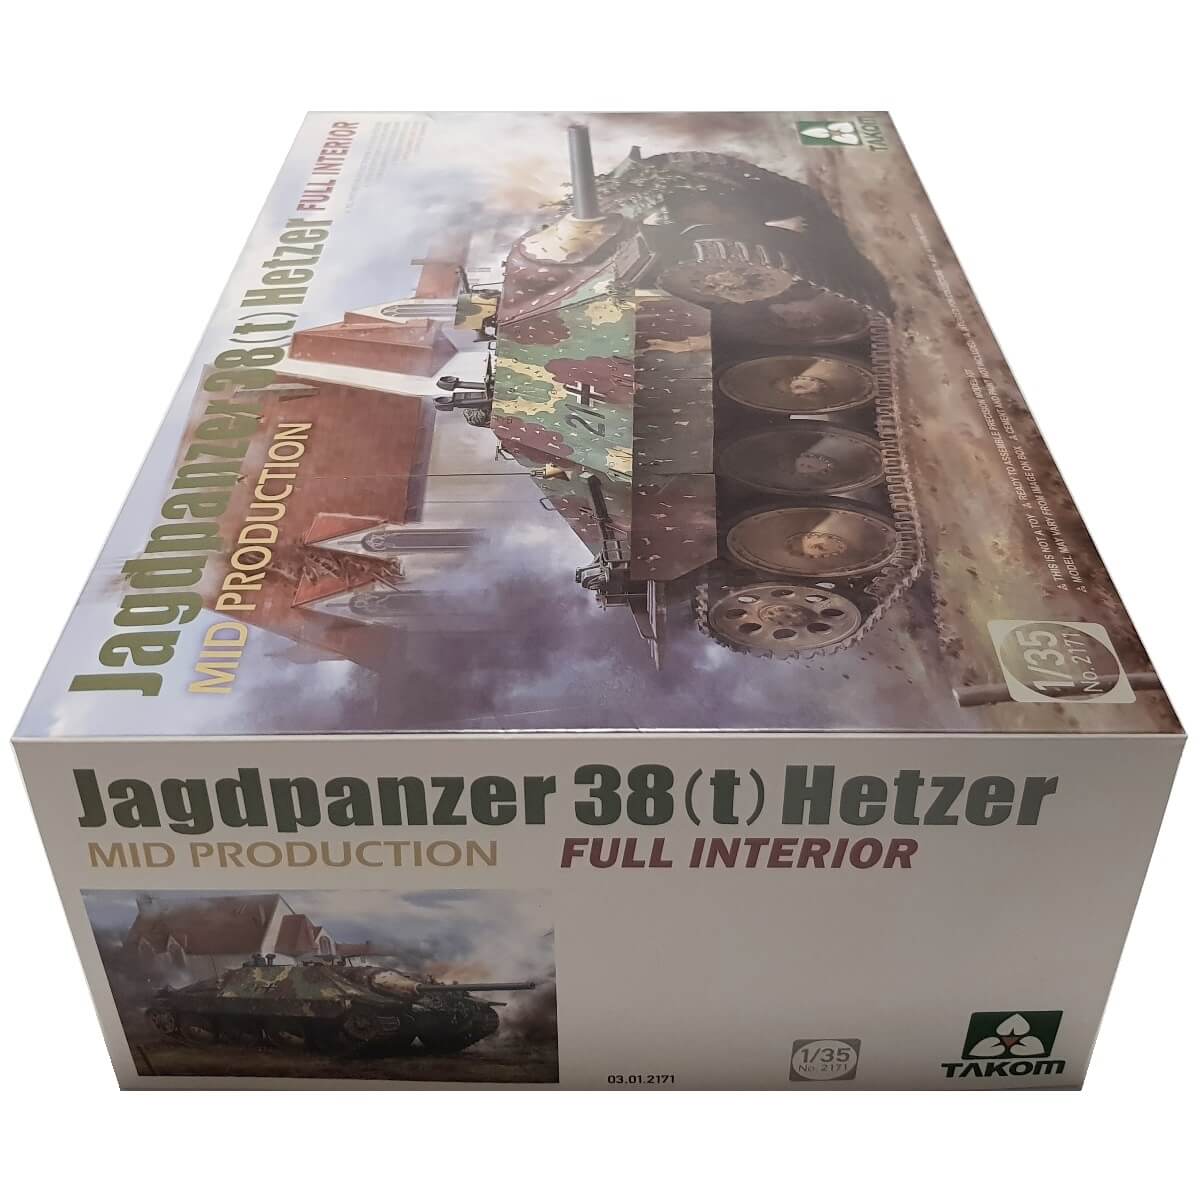 1:35 Jagdpanzer 38(t) Hetzer Mid Production - Full Interior - TAKOM